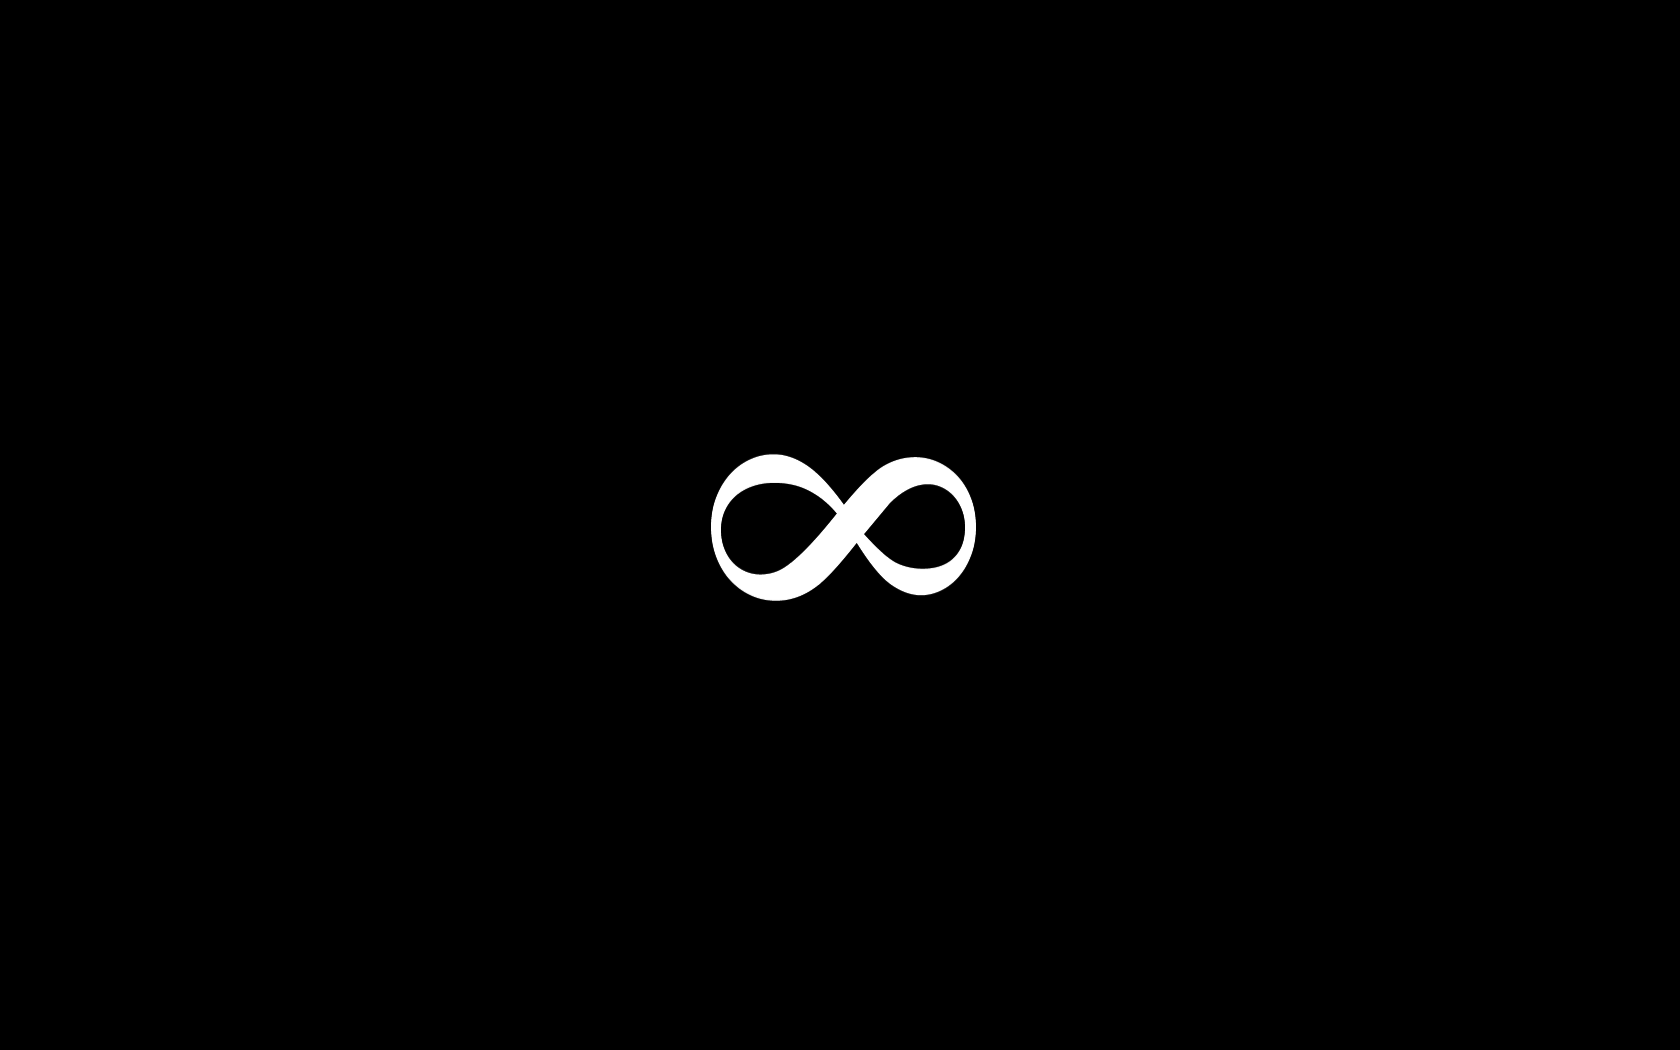 Infinity Symbol Wallpapers - WallpaperSafari